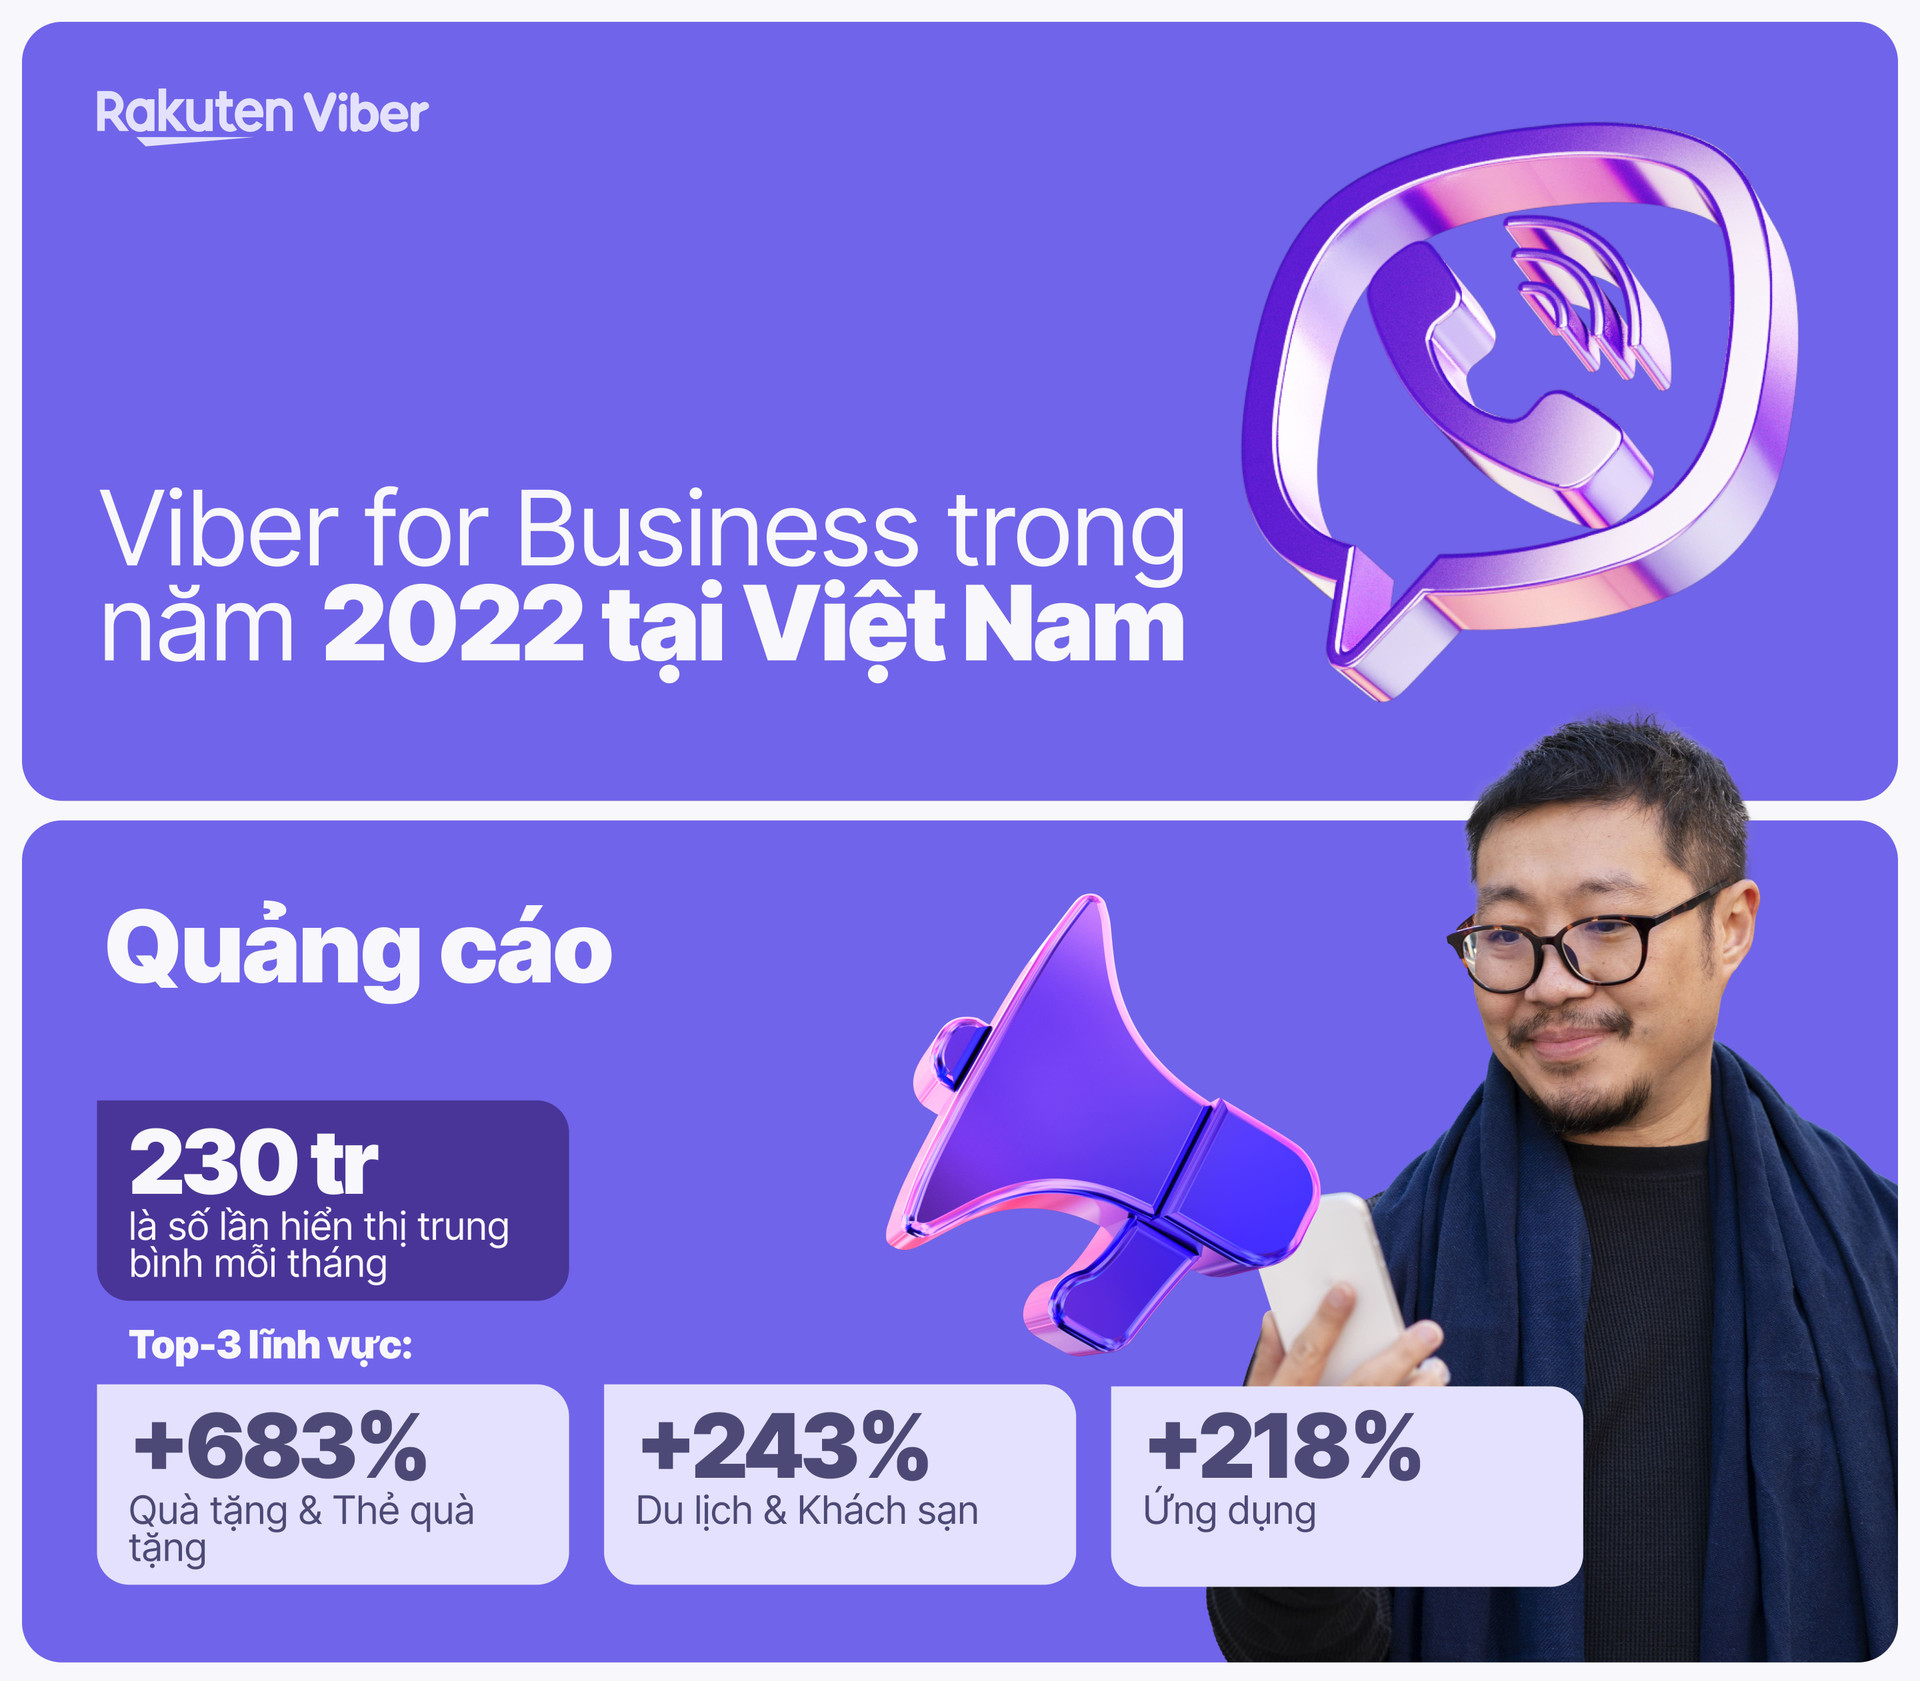 Viber Việt Nam: Năm 2022, lượng đăng ký tạo tài khoản tin nhắn kinh doanh tăng 60%, Viber Pay có thể sẽ được triển khai - Ảnh 2.